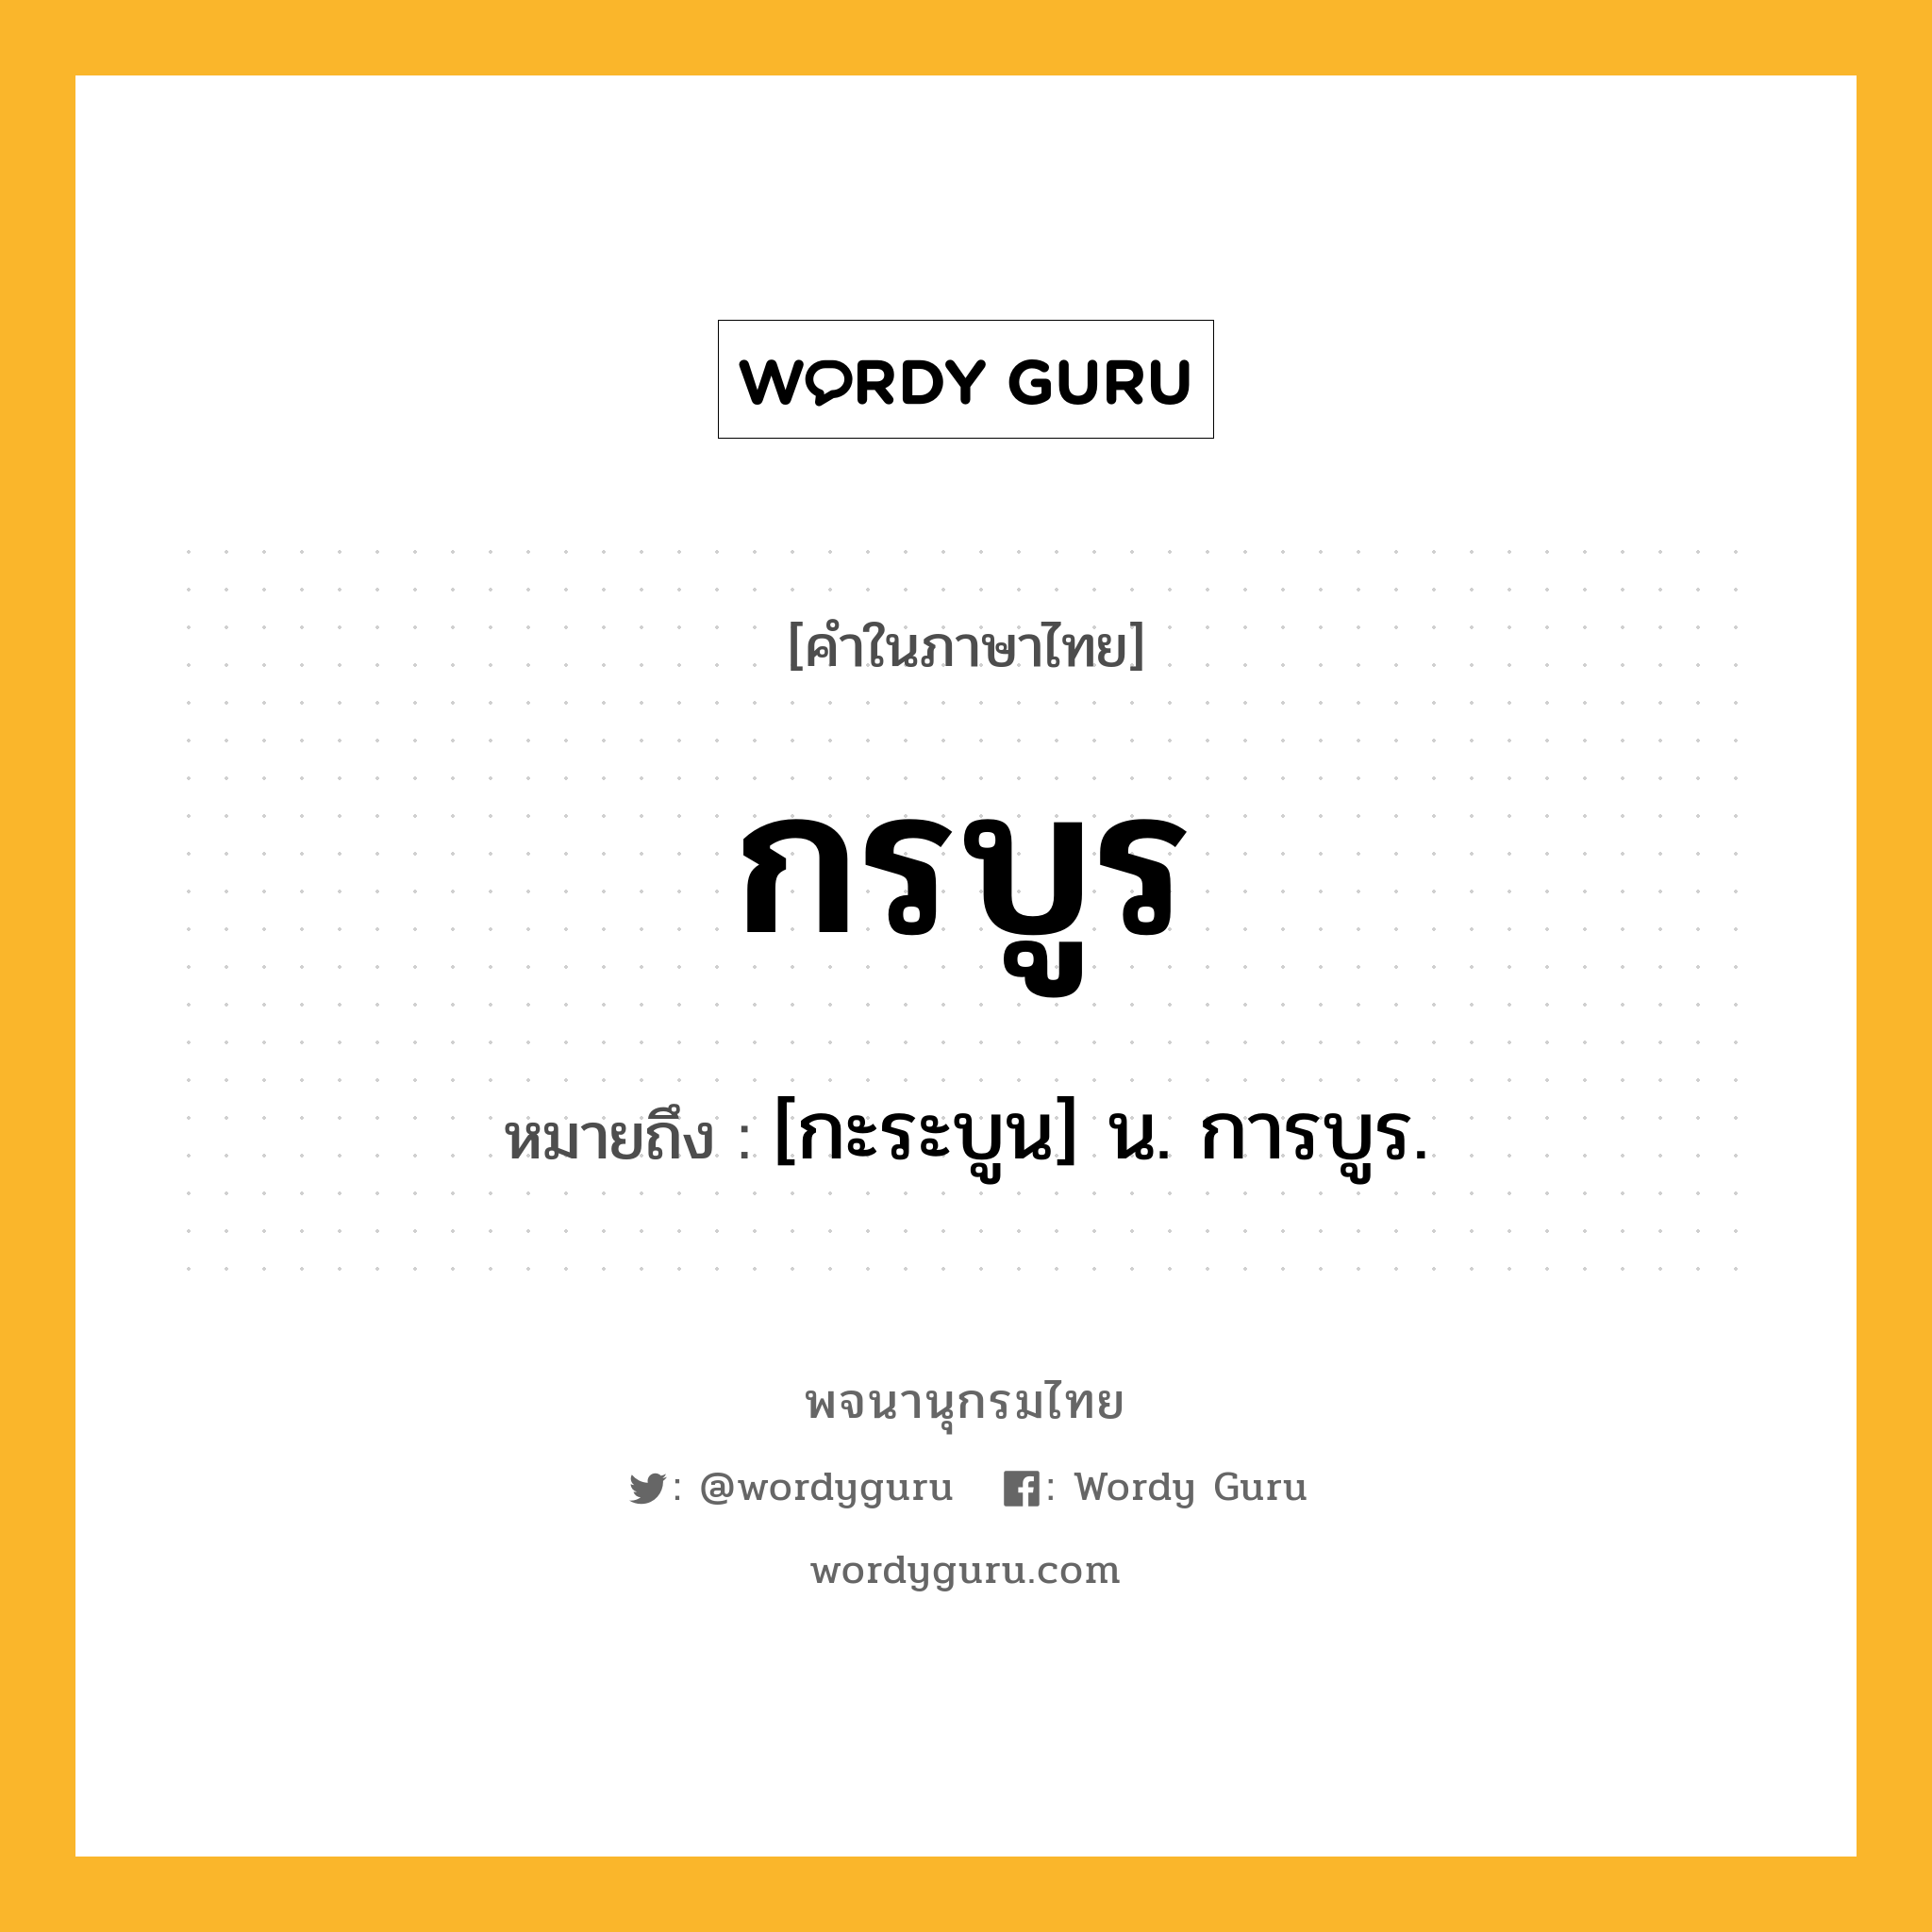 กรบูร หมายถึงอะไร?, คำในภาษาไทย กรบูร หมายถึง [กะระบูน] น. การบูร.